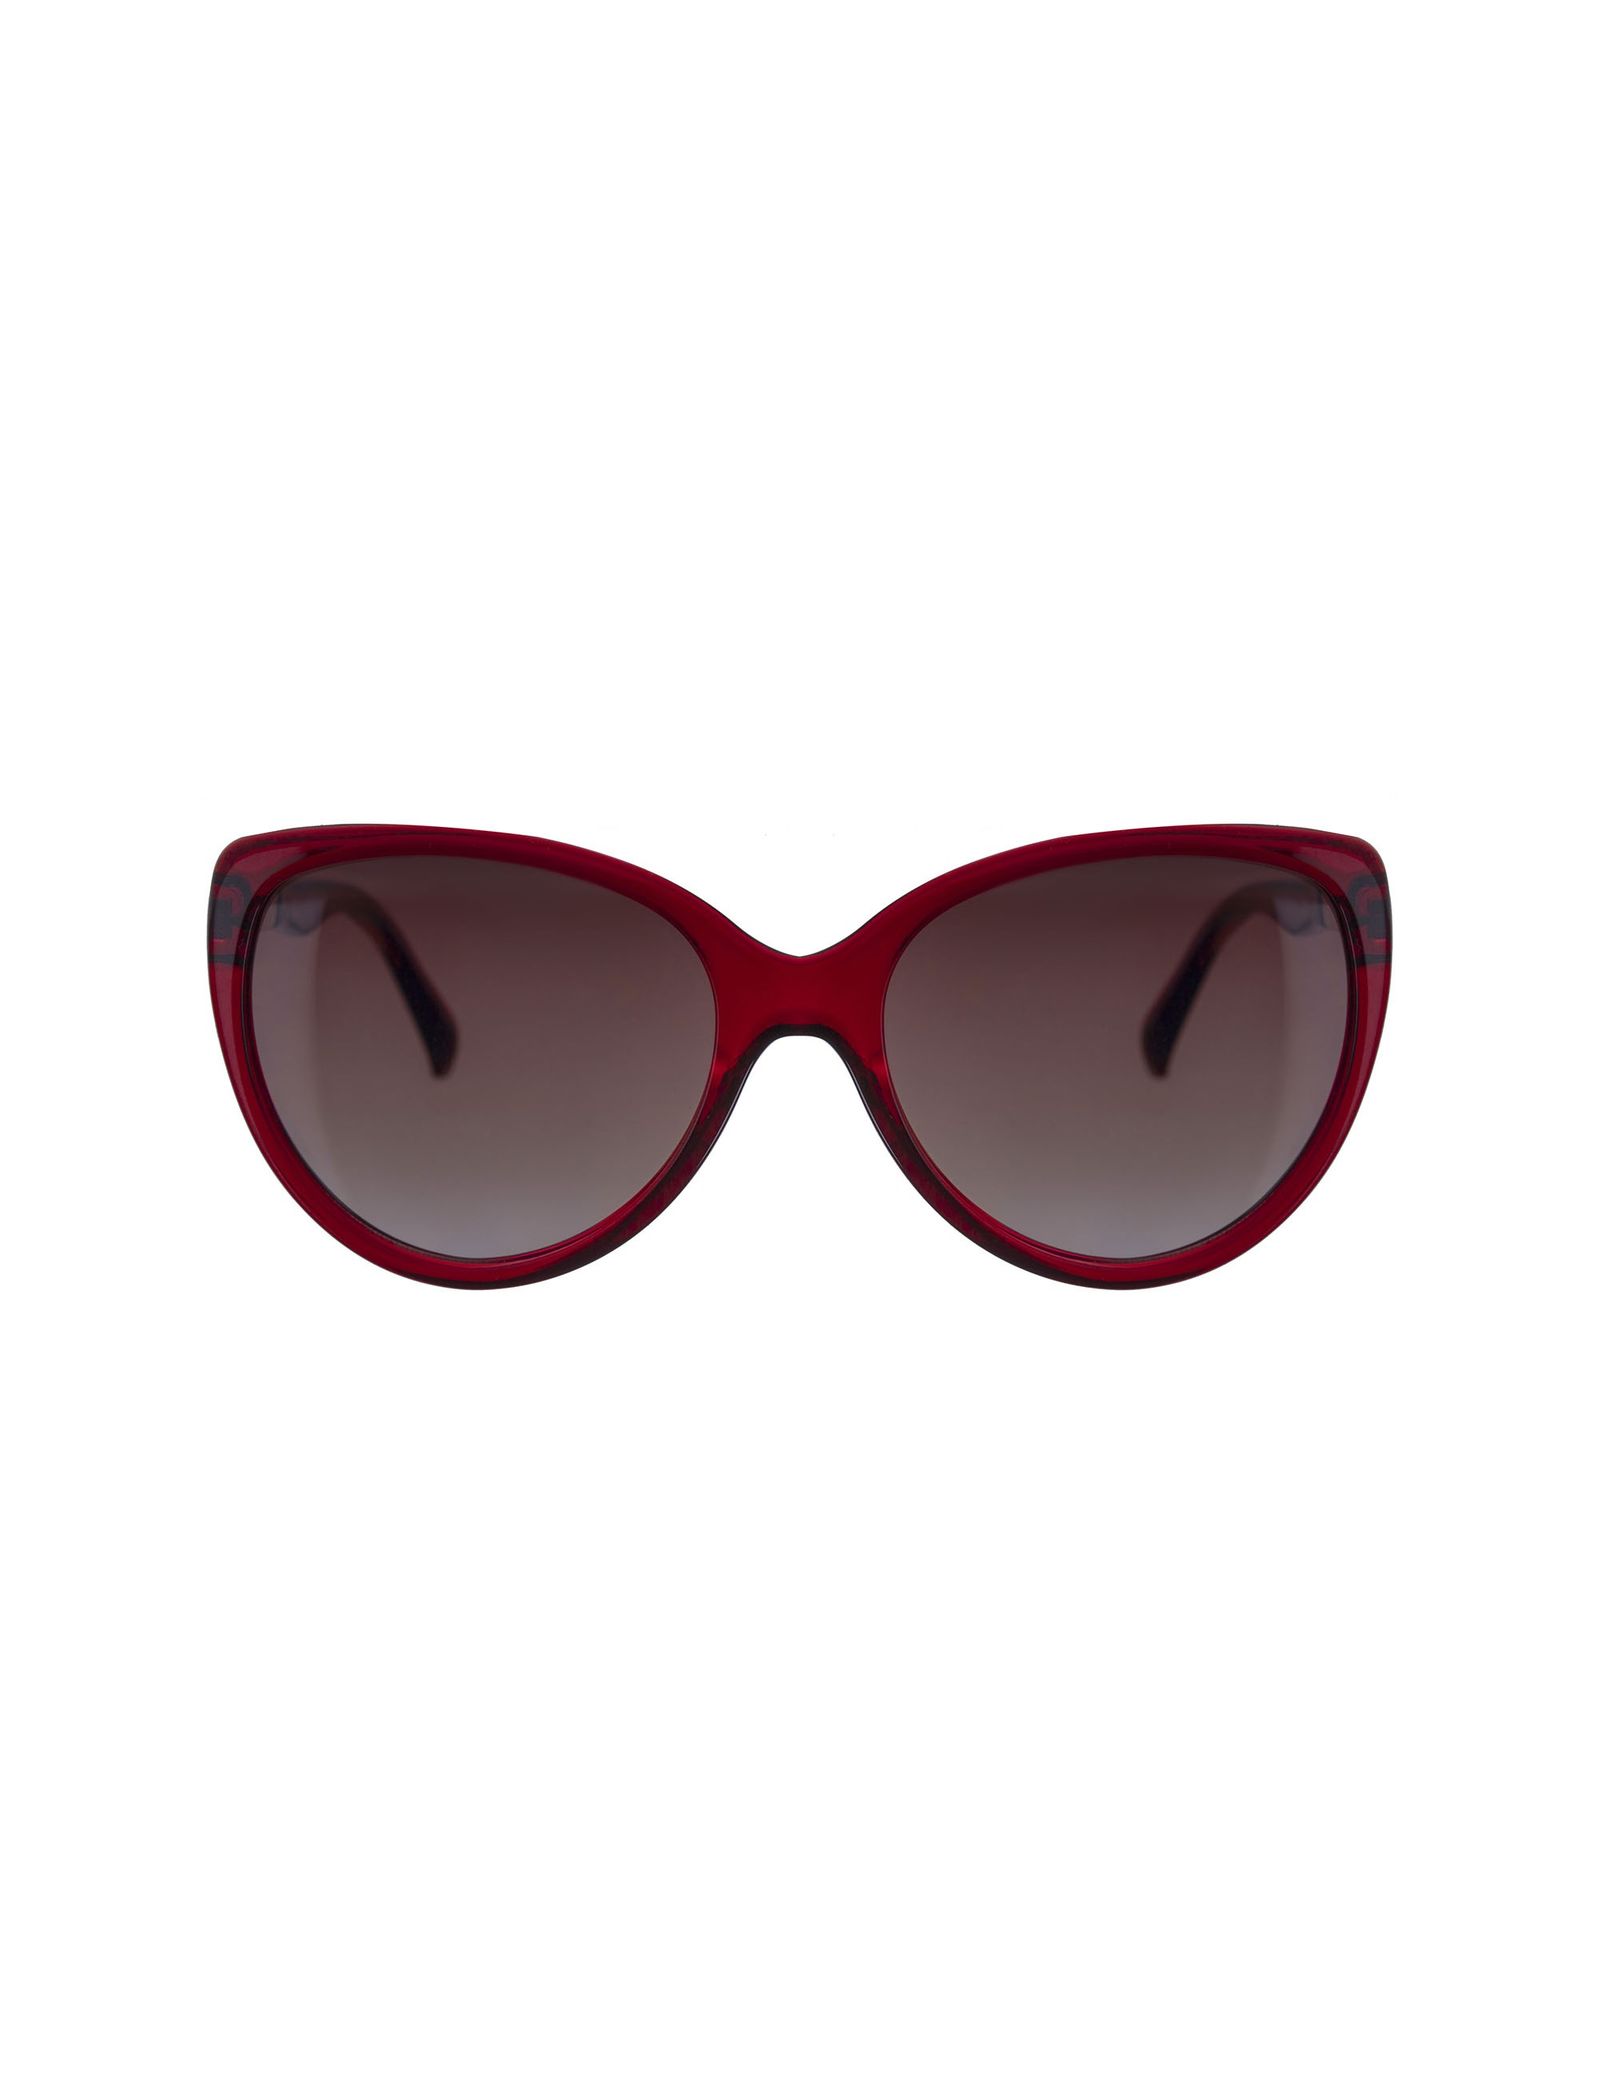 عینک آفتابی زنانه - تد بیکر - قرمز    - 2